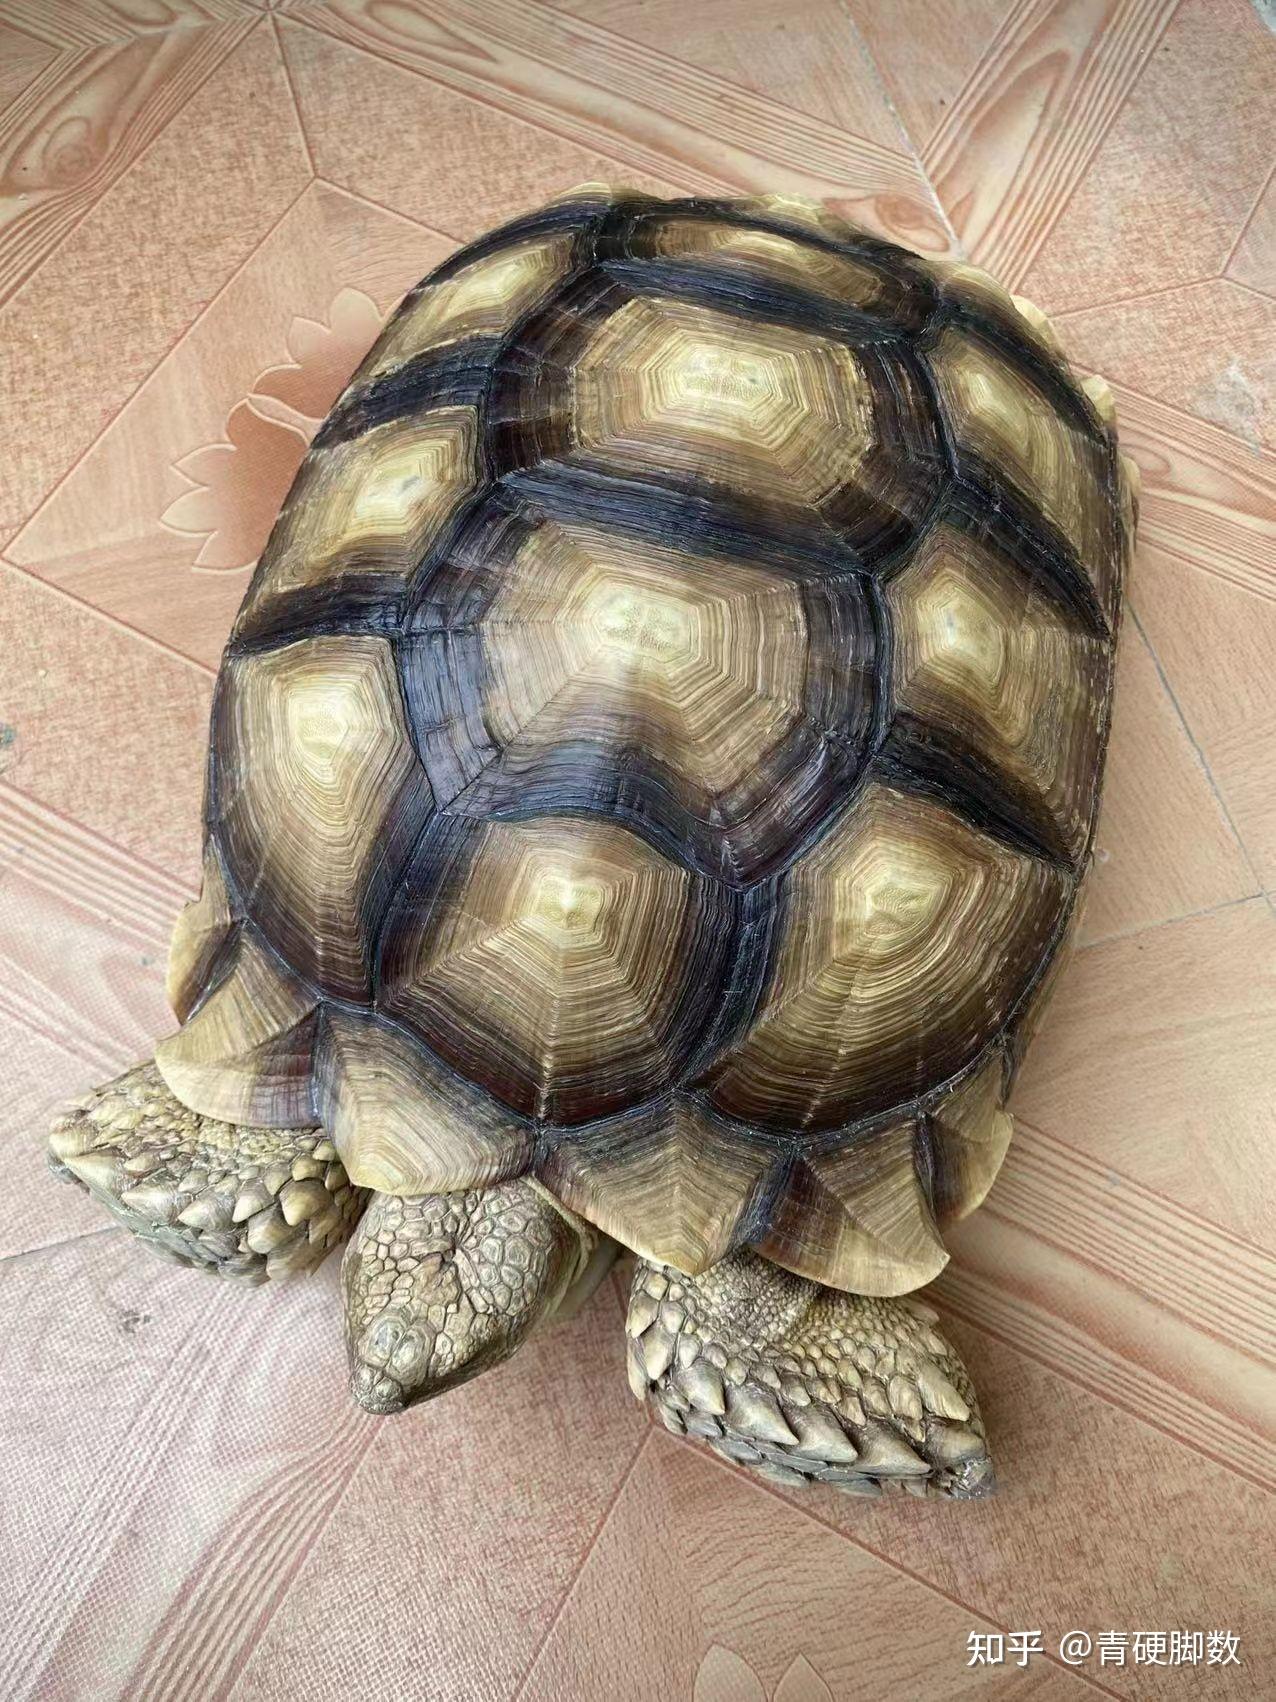 苏卡达龟象龟野生动物自然摄影图配图高清摄影大图-千库网